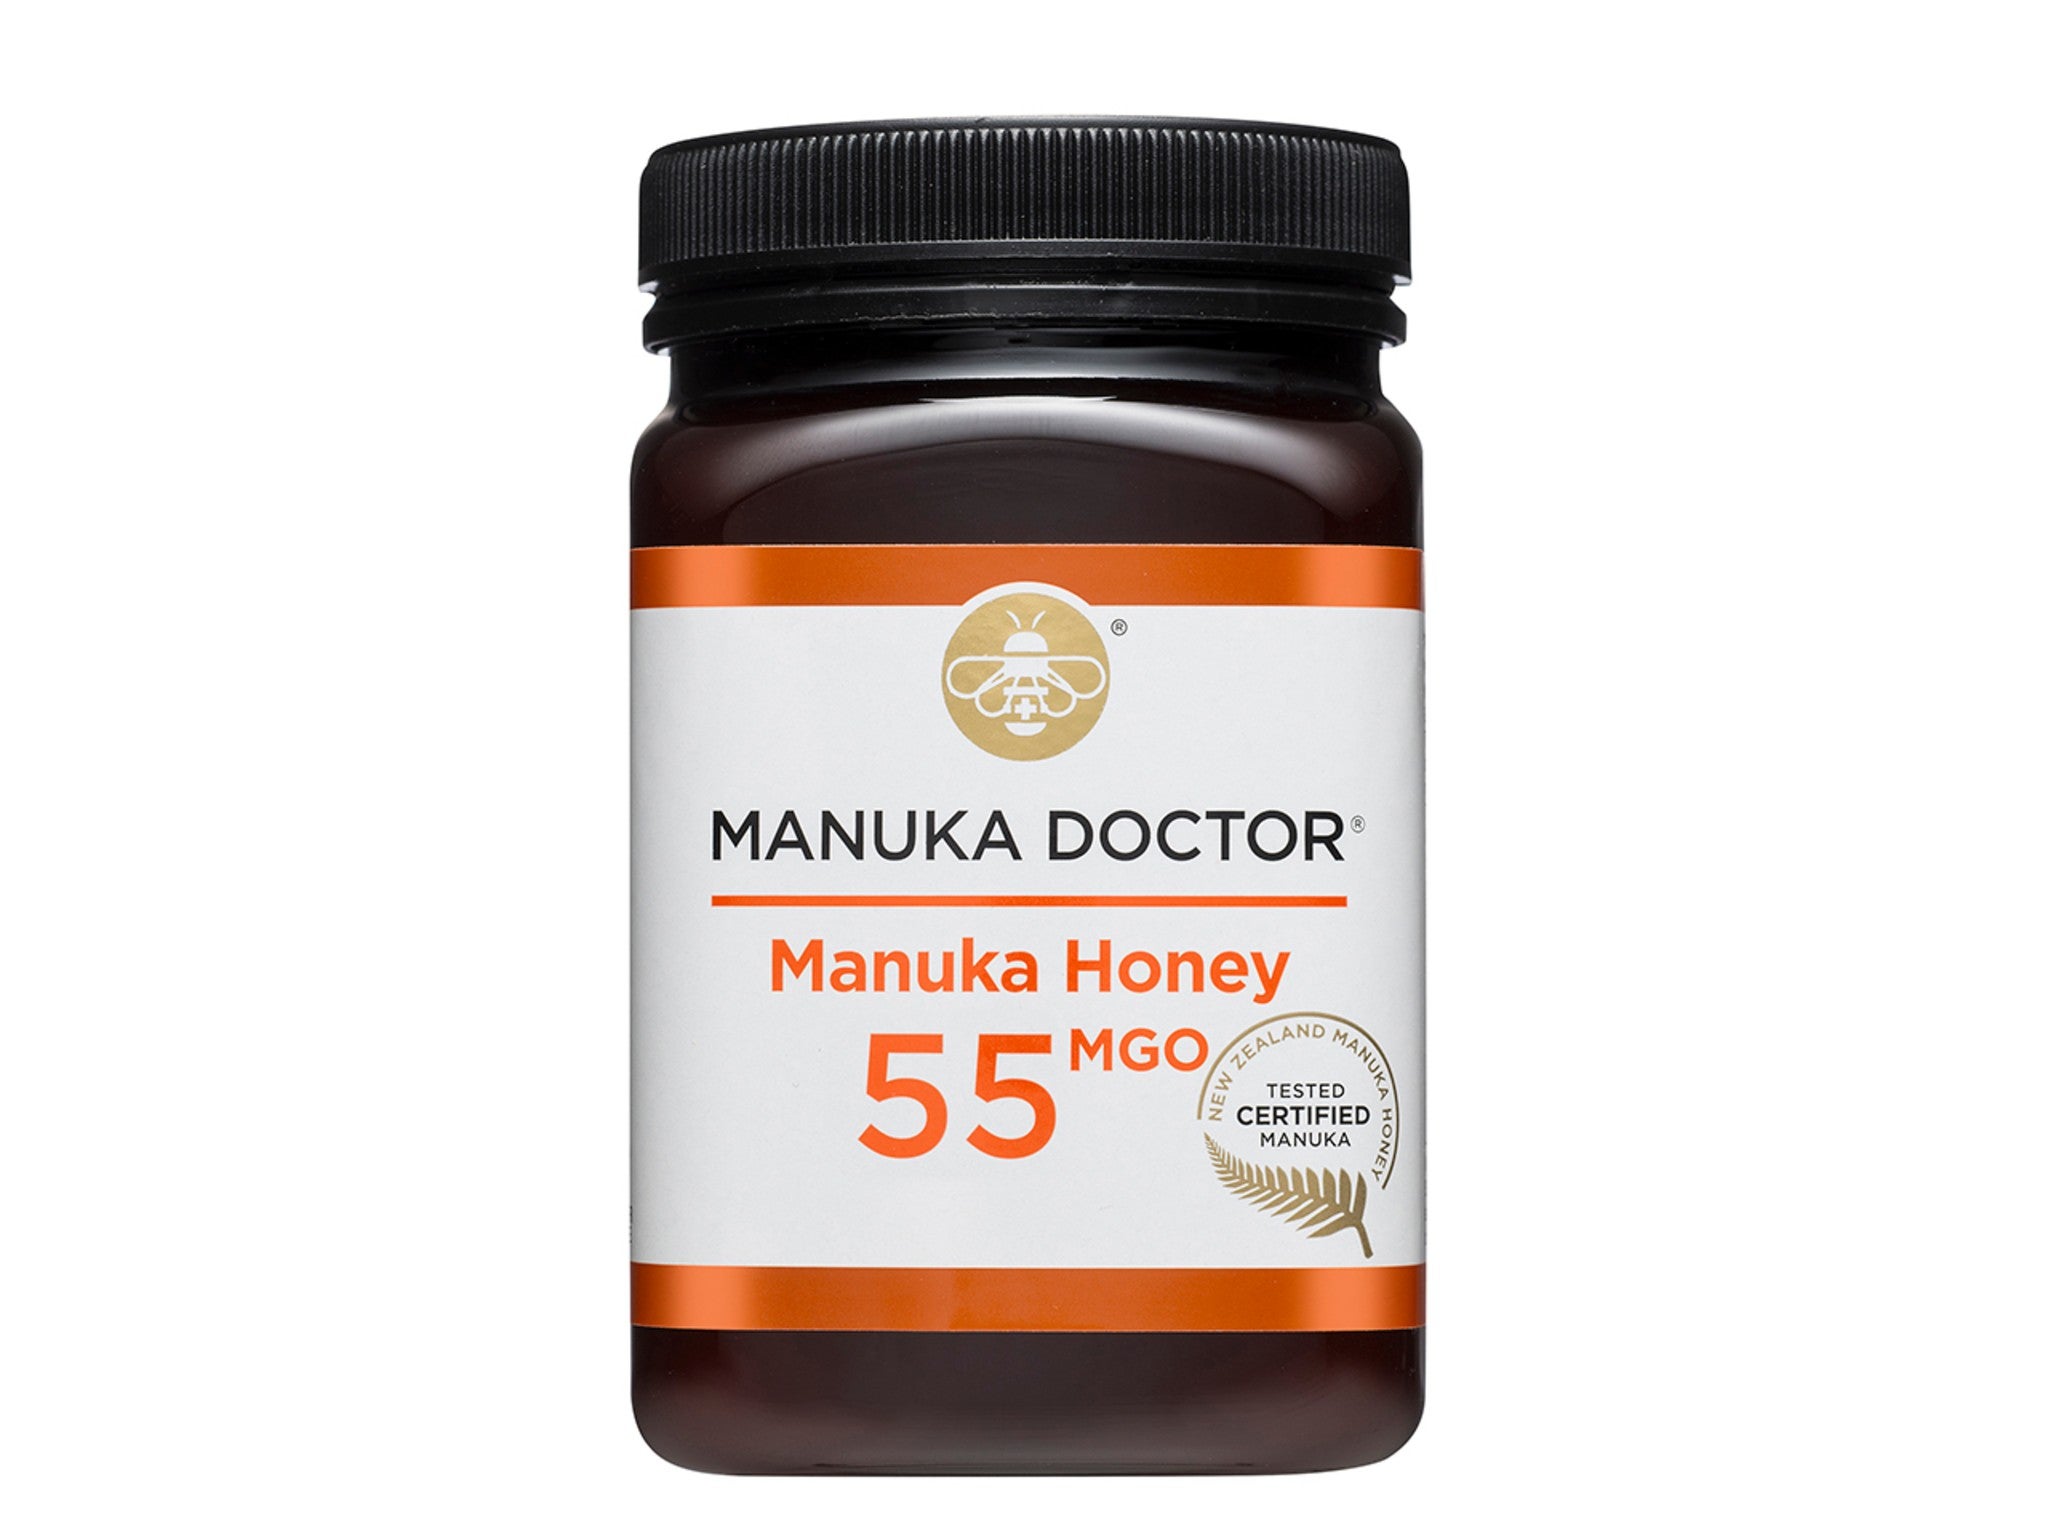 Manuka Doctor manuka honey, 55 MGO, 500g  indybest.jpg